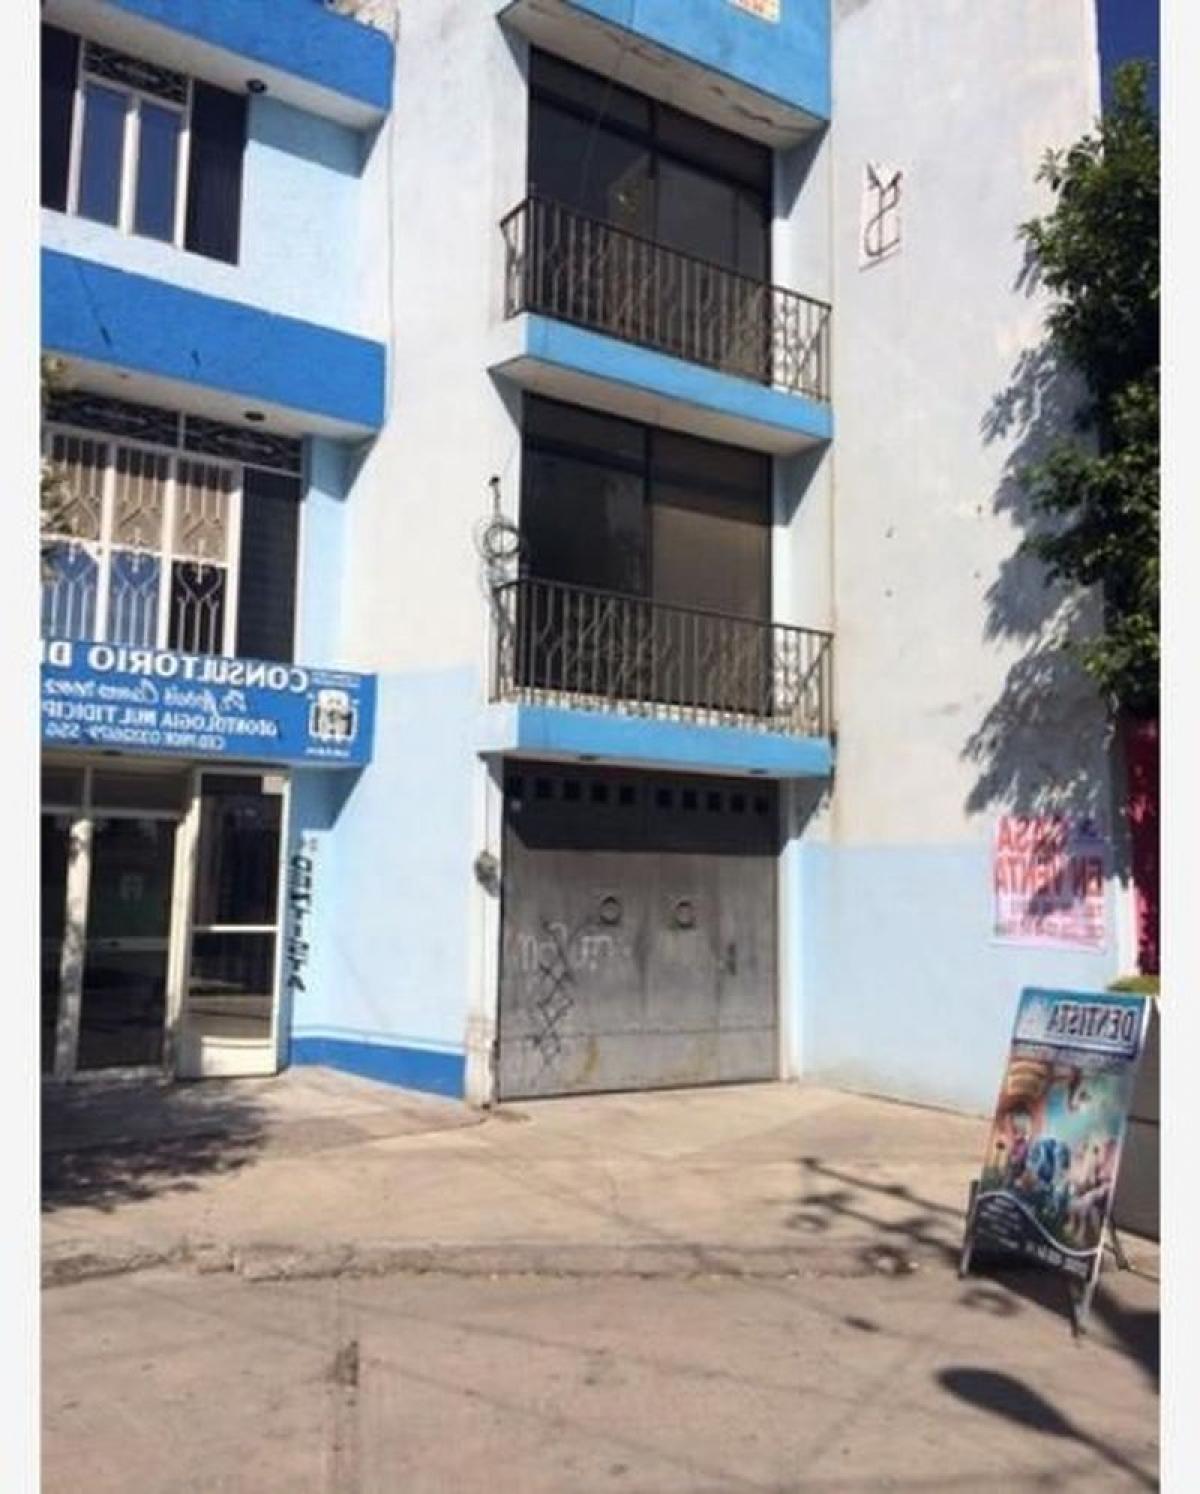 Picture of Home For Sale in Uriangato, Guanajuato, Mexico